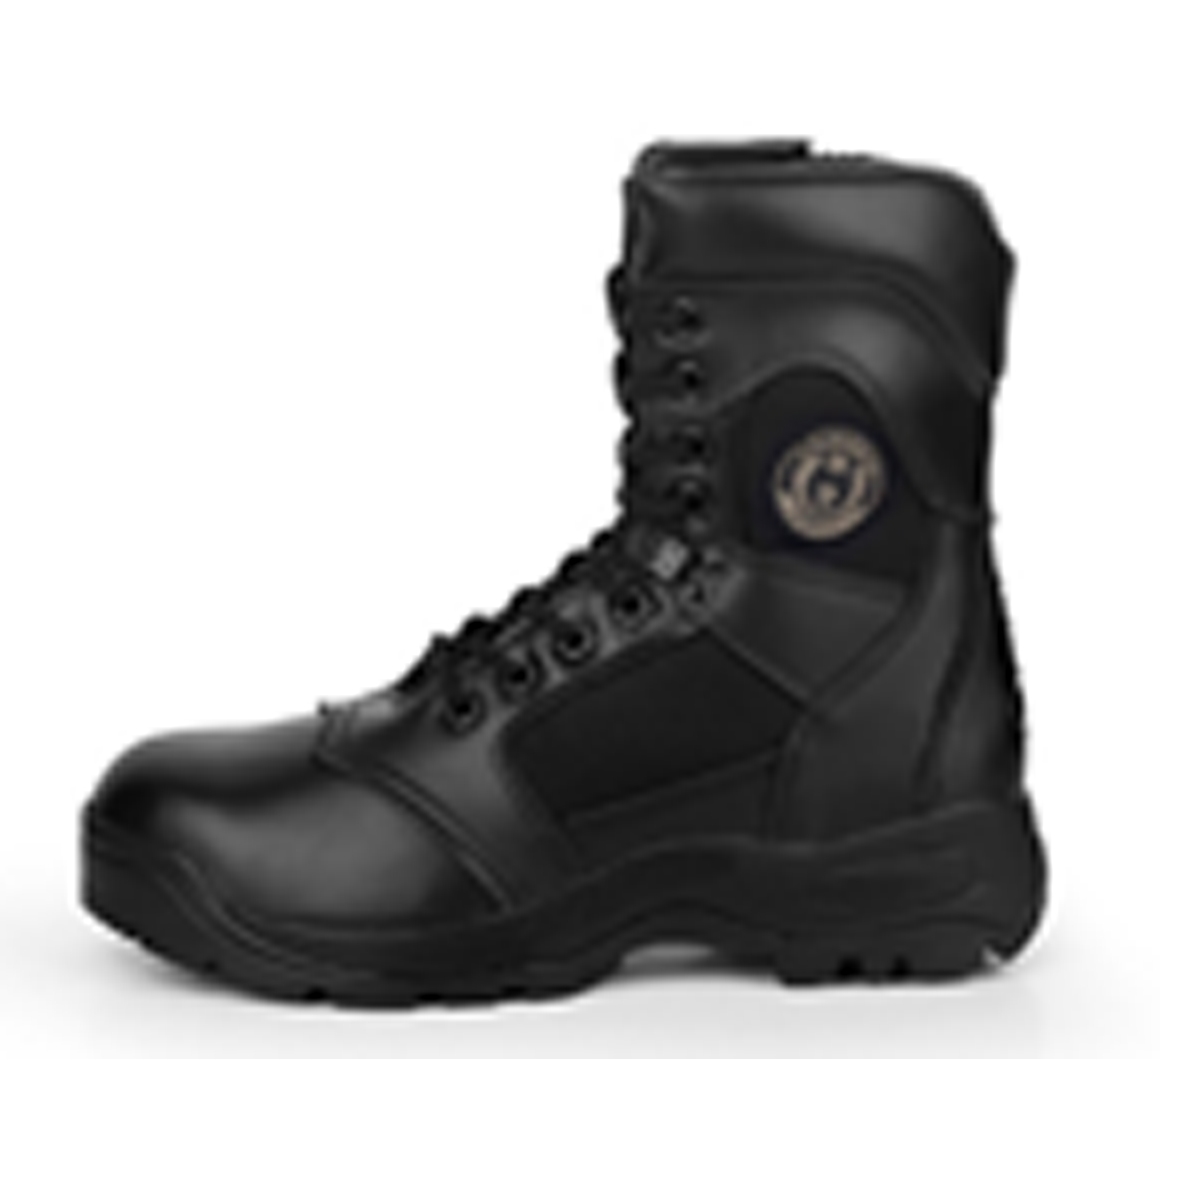 black tactical combat boots